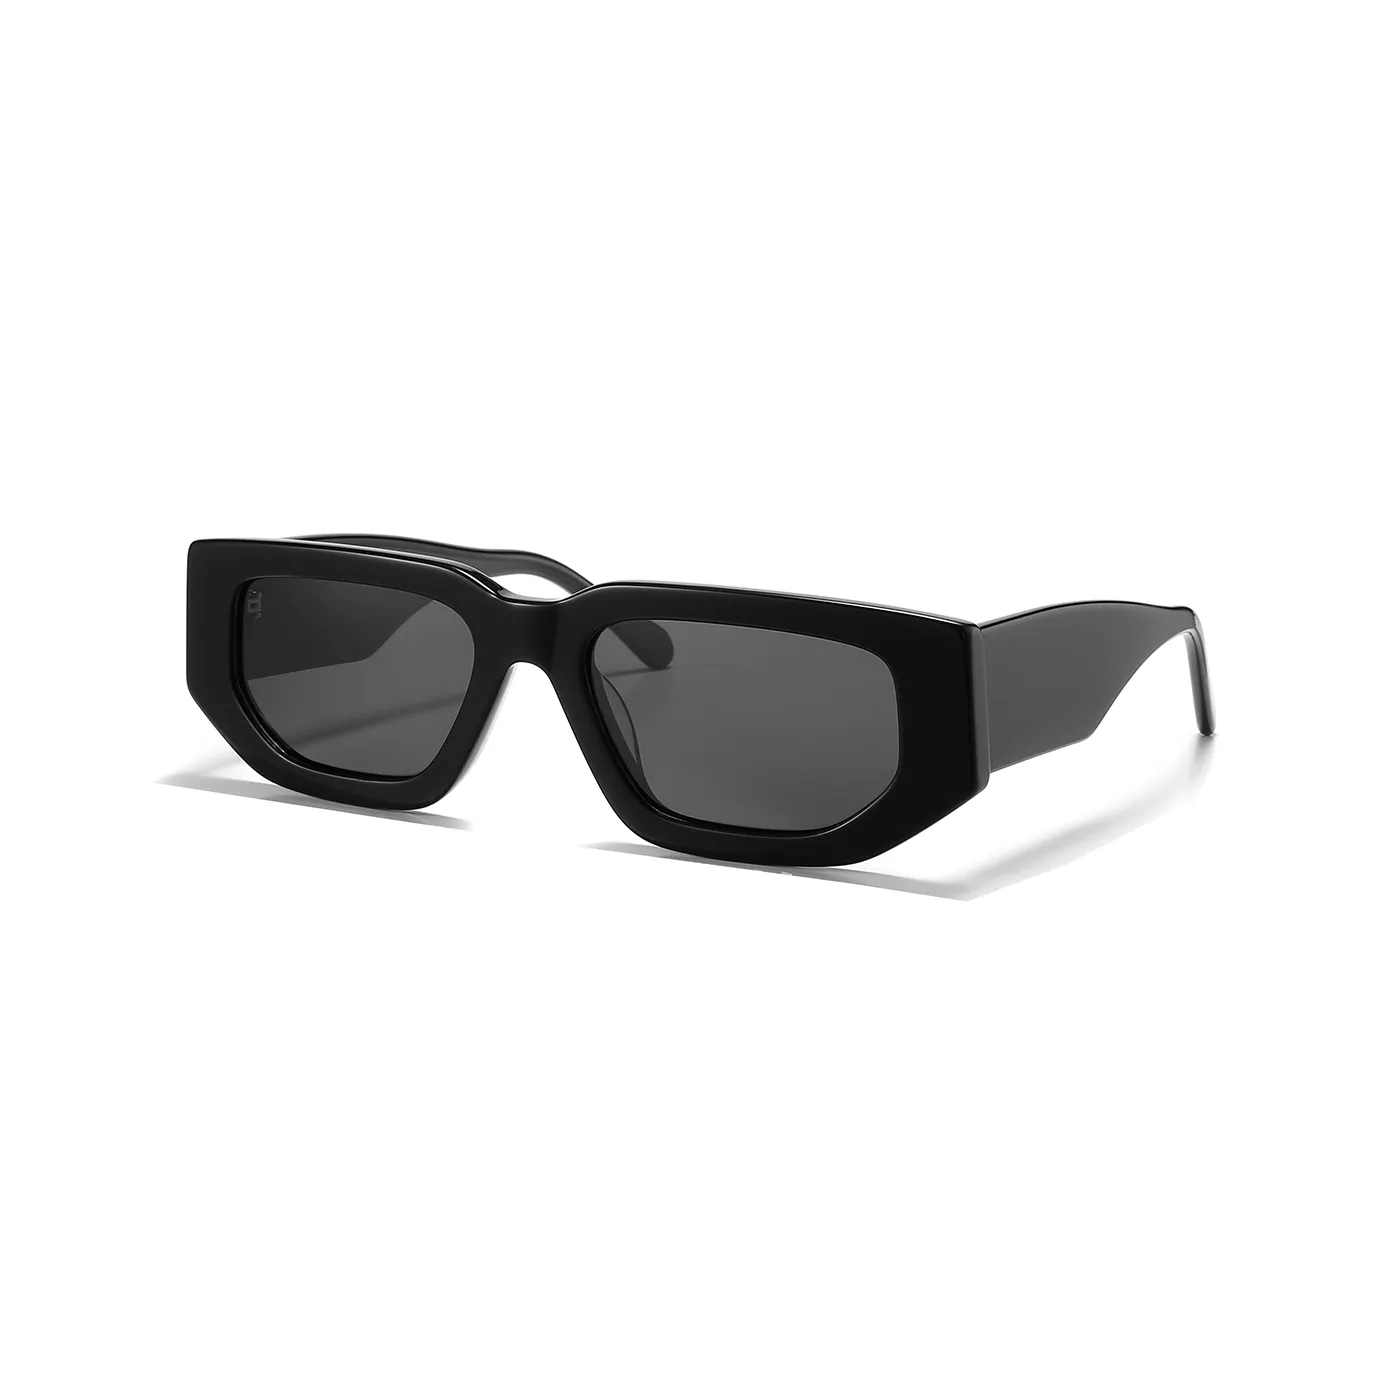 Premium high quality sun glasses vintage Thick Frames Acetate Sunglasses Women Men Gafas De Sol